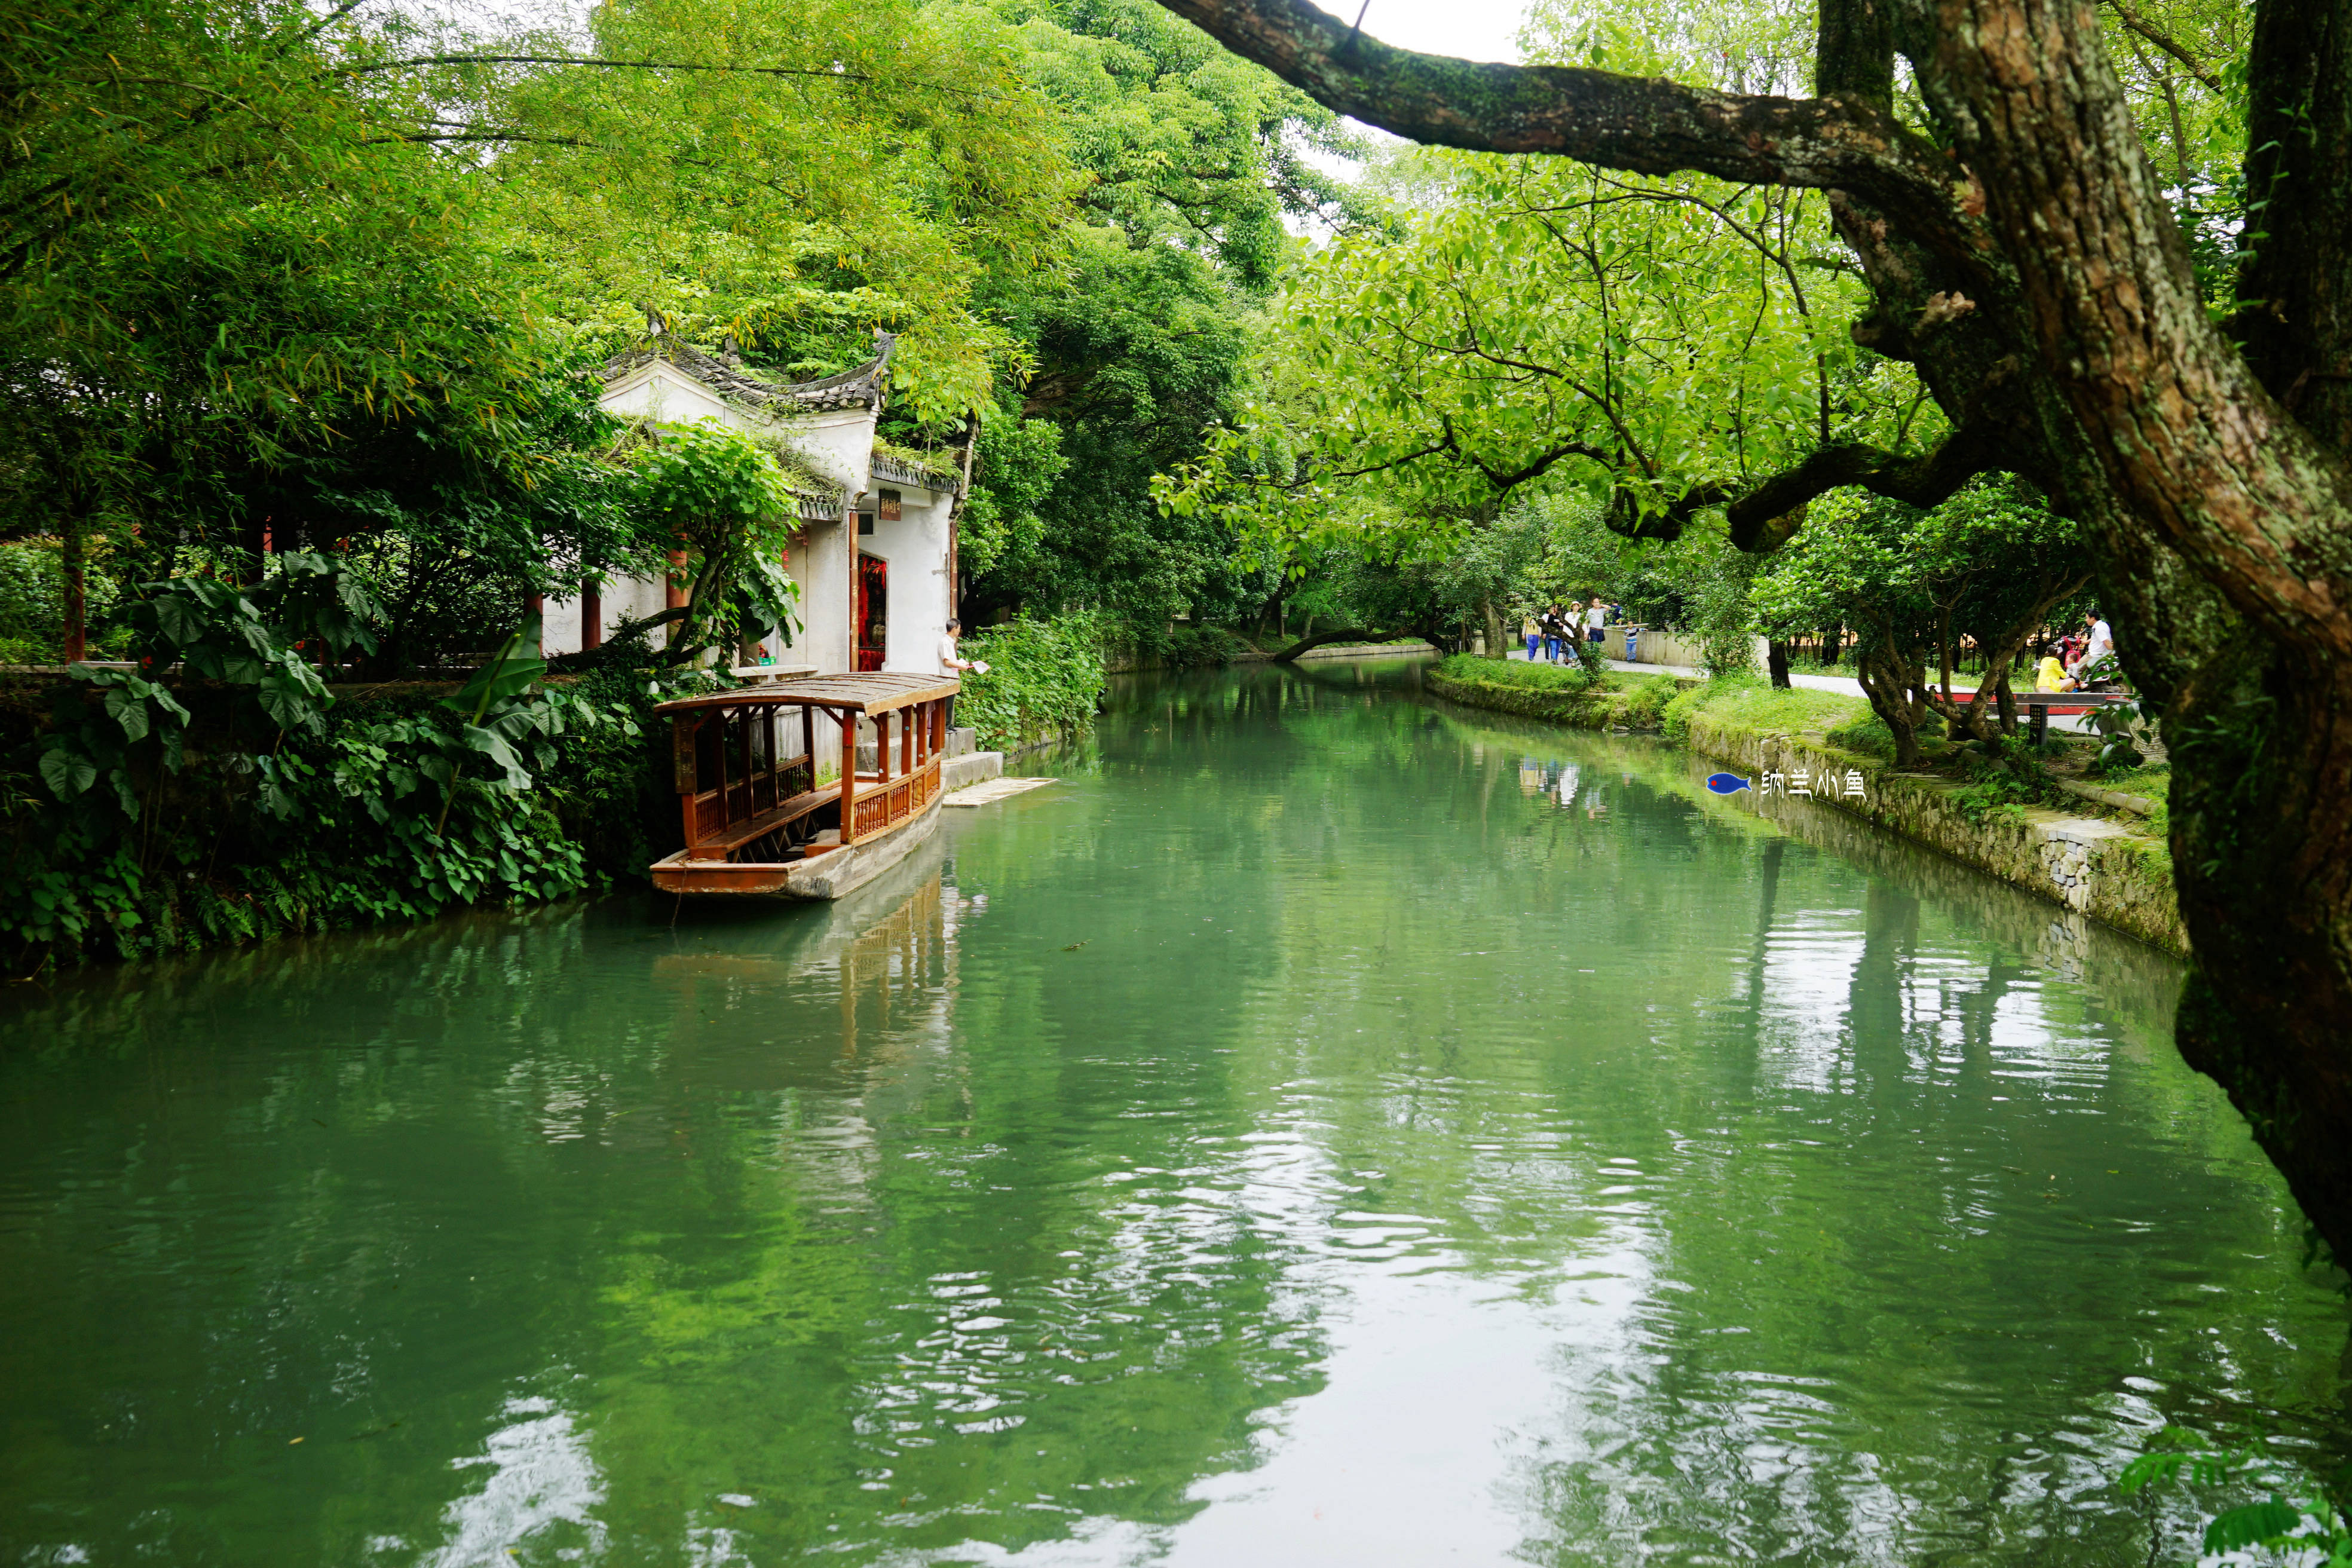 原创探访广西兴安灵渠 2200多年前修建的水利工程至今仍发挥作用!